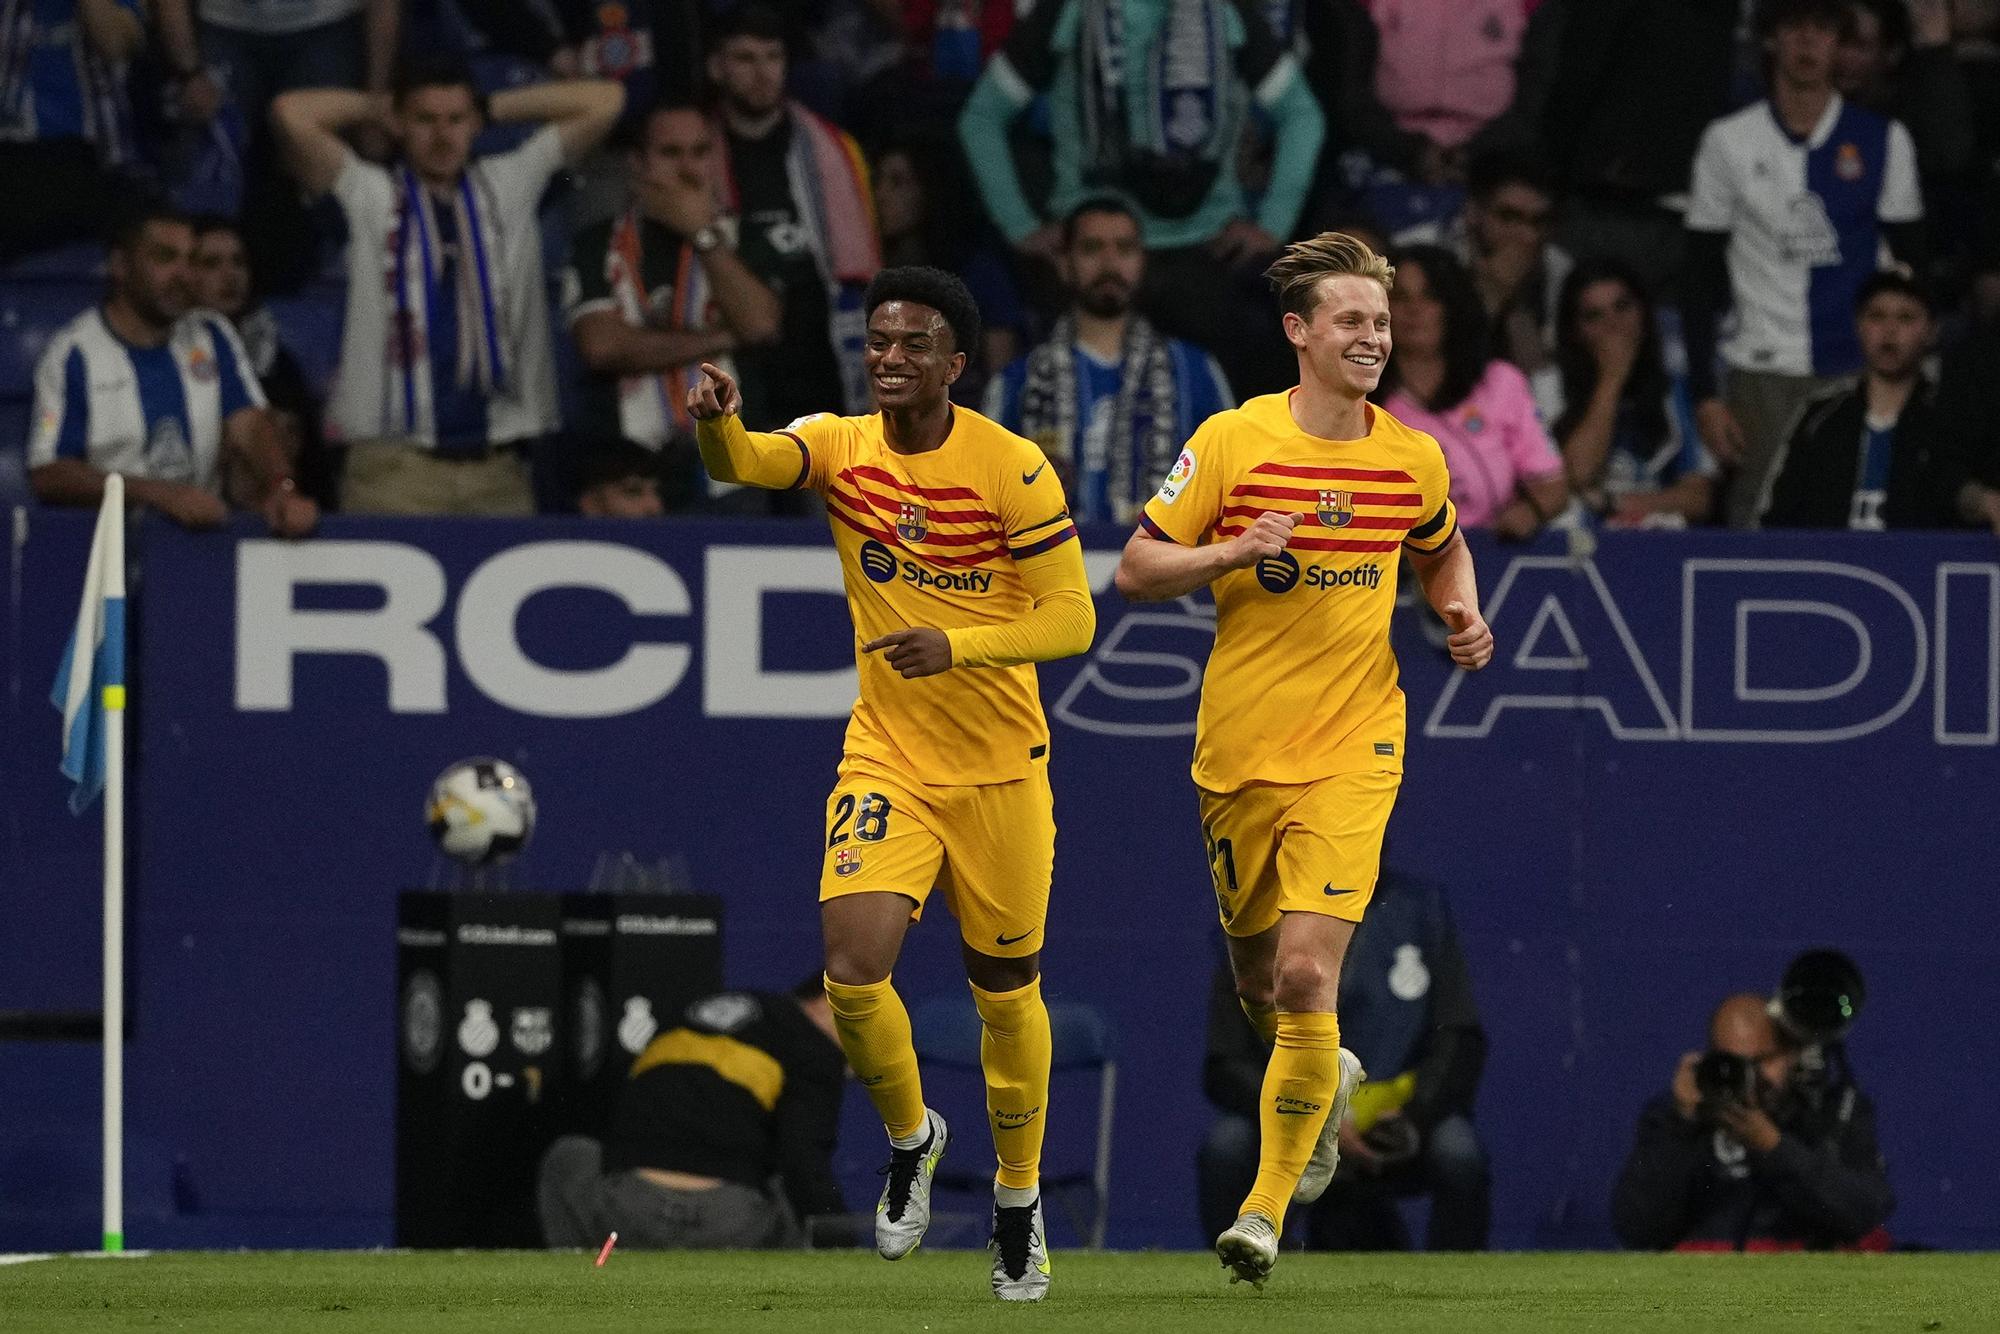 RCD Espanyol - FC Barcelona